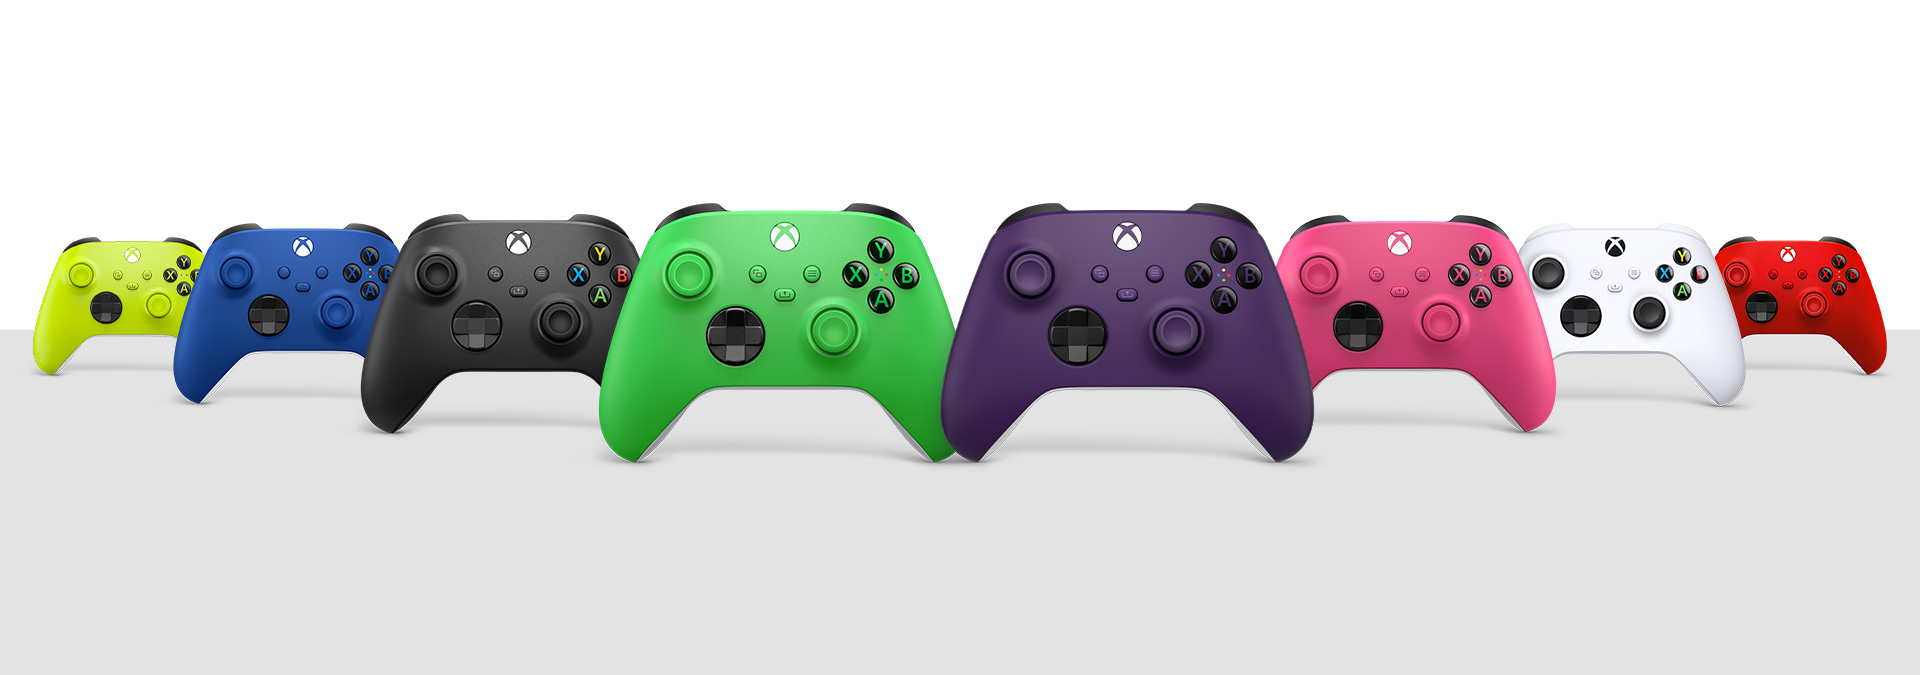 Control inalámbrico Xbox en negro carbón, blanco robot, azul brillante, rojo intenso, voltios eléctricos, rosa intenso, verde velocidad y púrpura astral